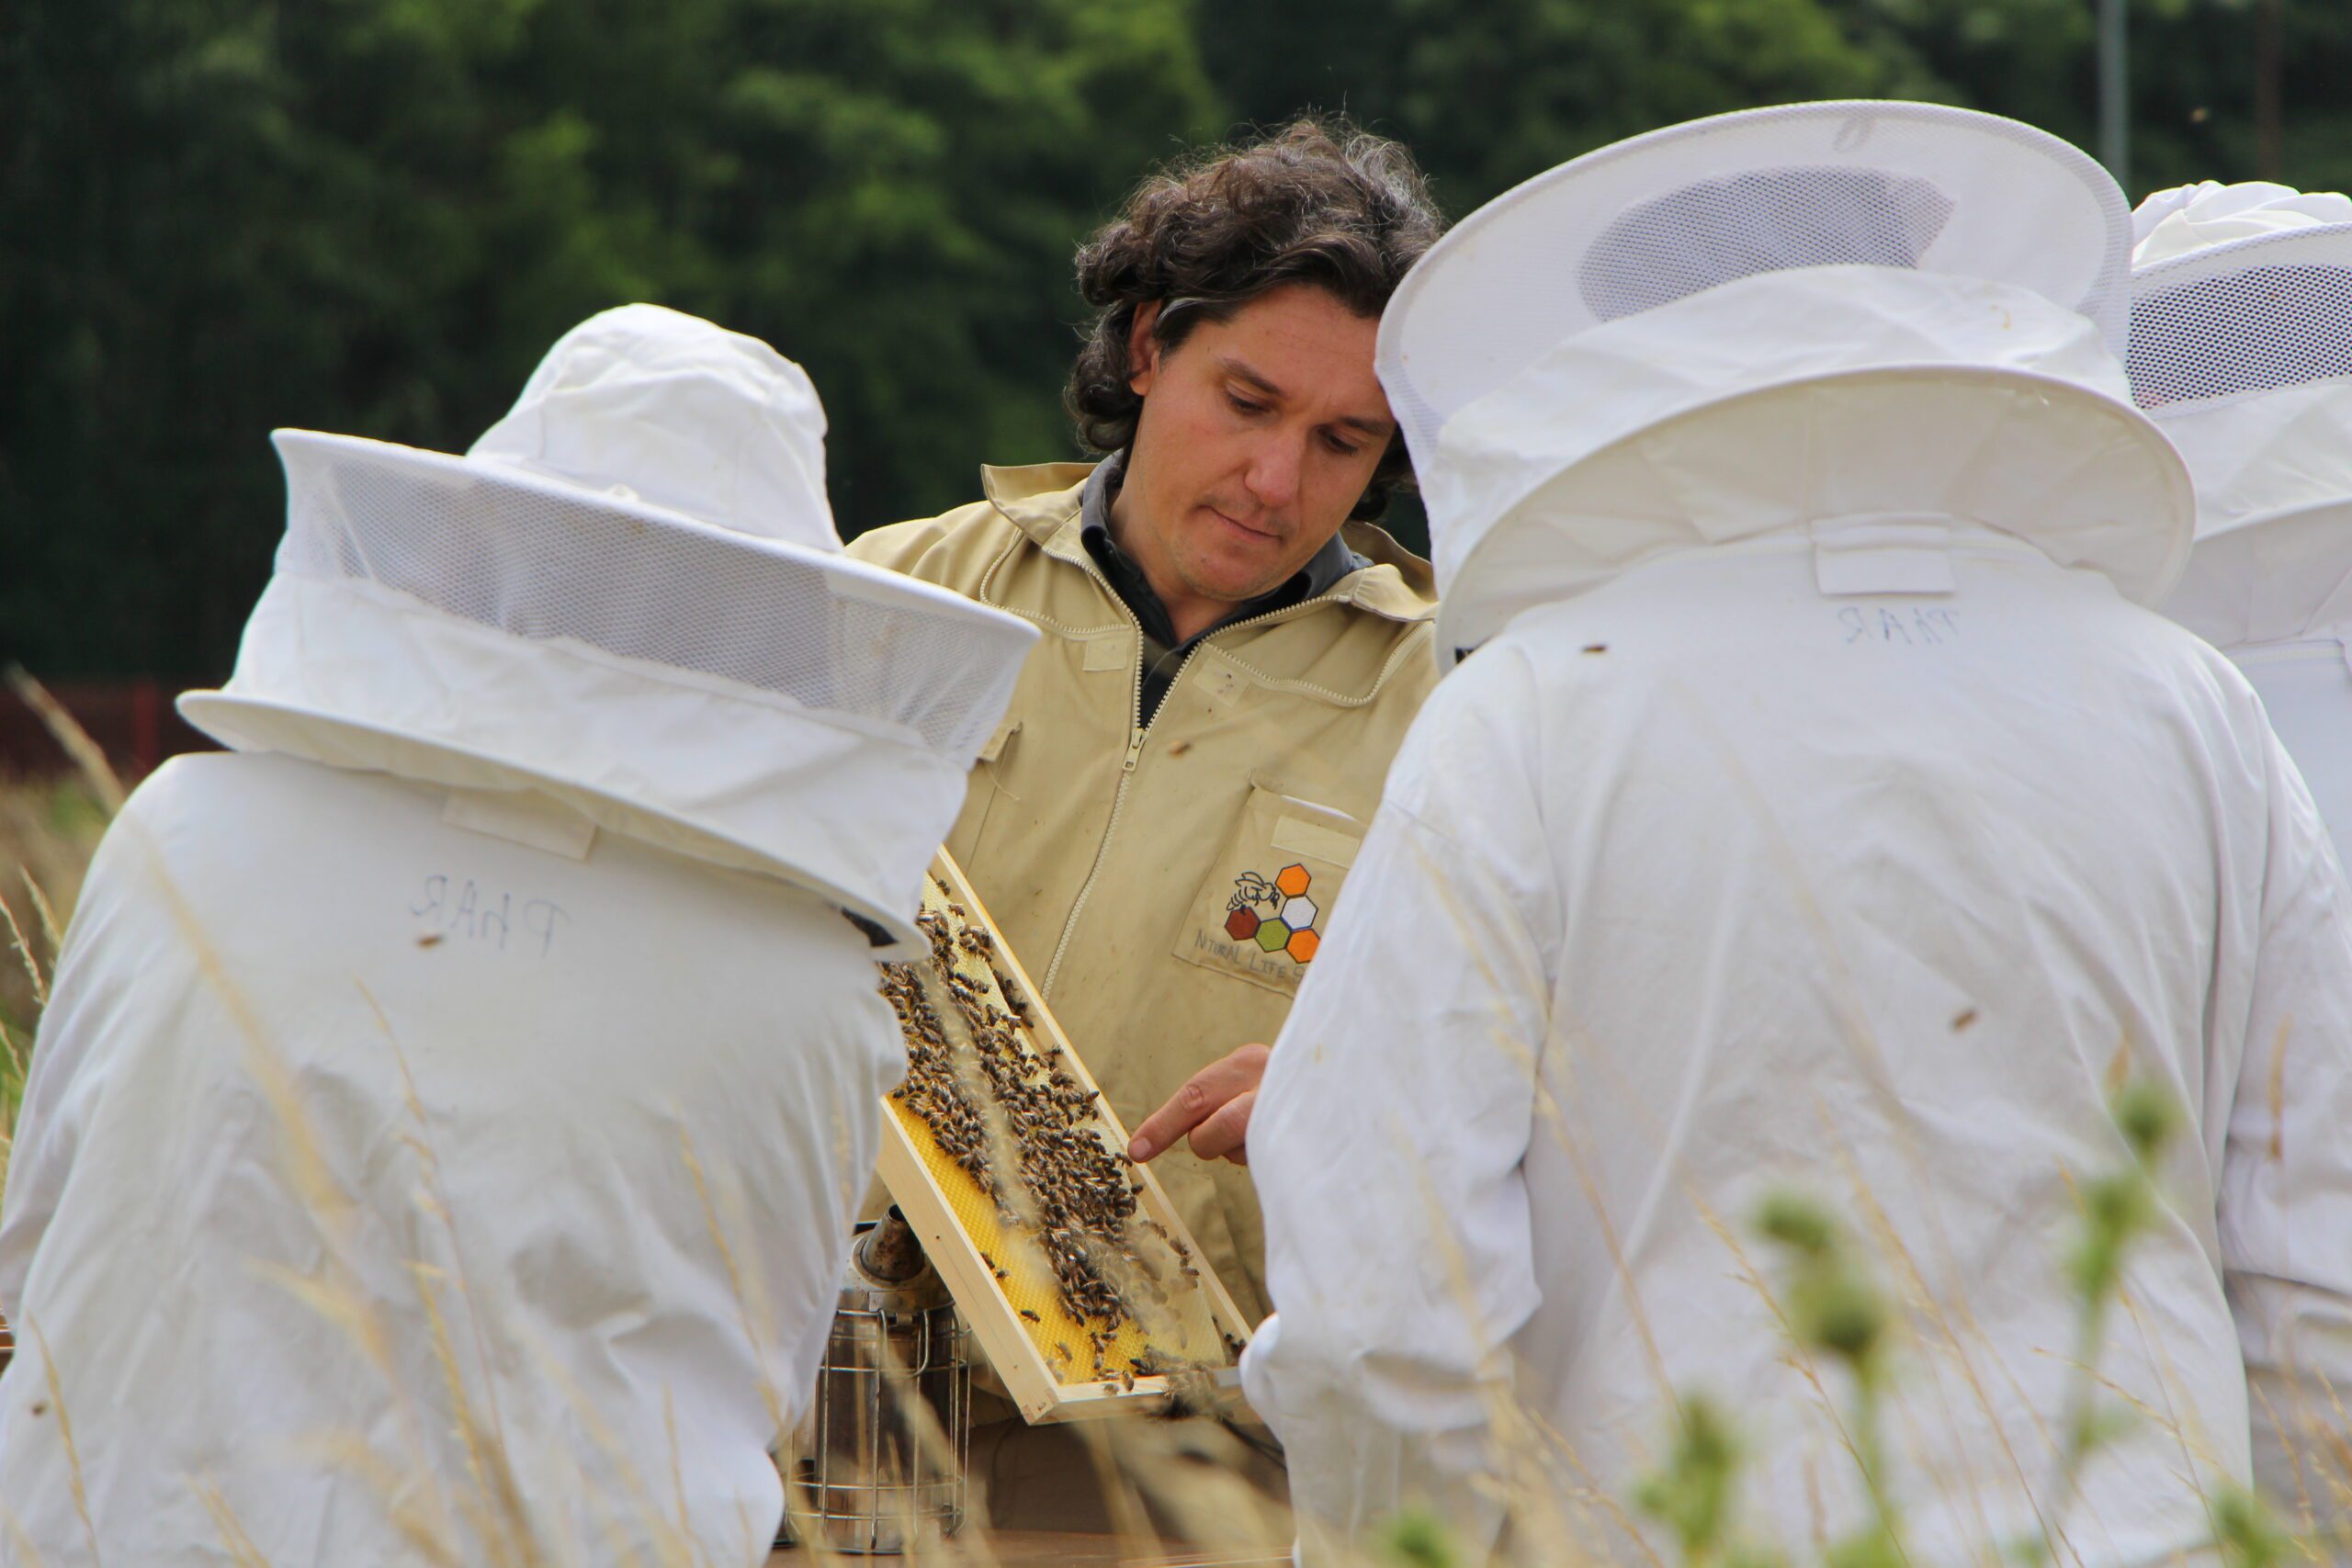 Apiculteur, Aurélien nous parle de sa passion pour les abeilles, de ses 50 colonies et du miel